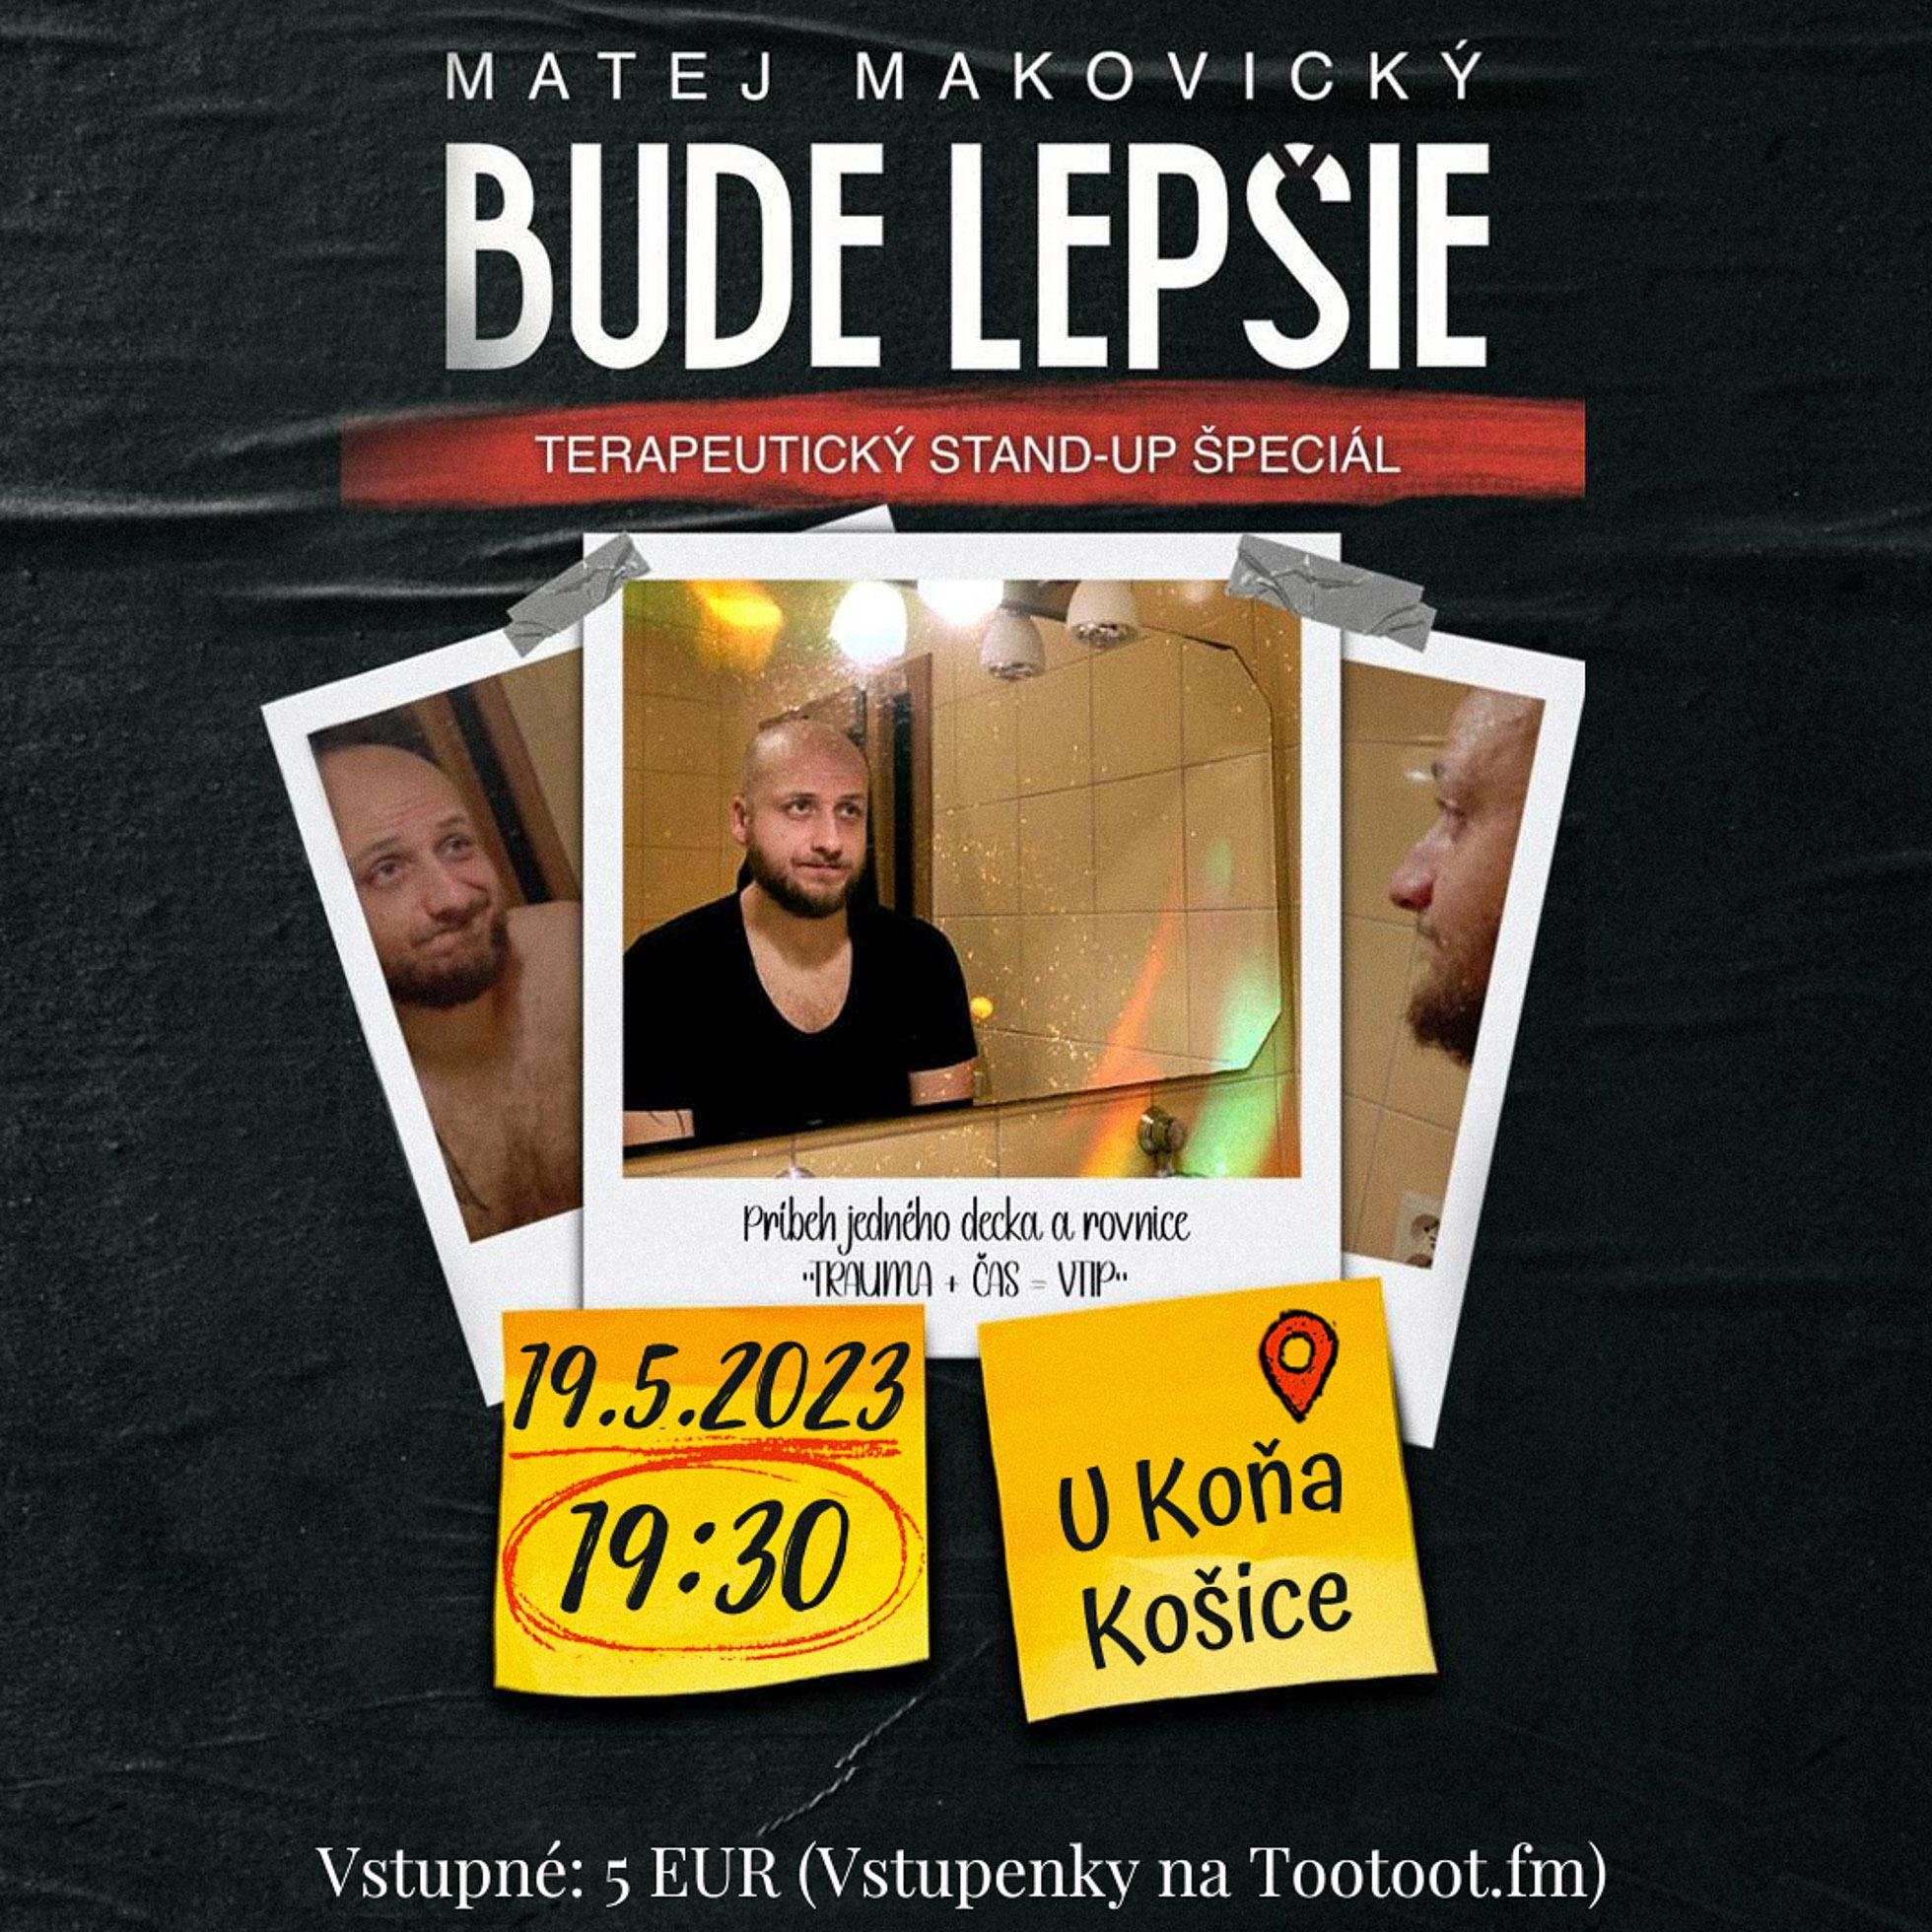 Špeciál Mateja Makovického s názvom "Bude Lepšie" si budete môcť pozrieť v Košiciach už 19. mája.